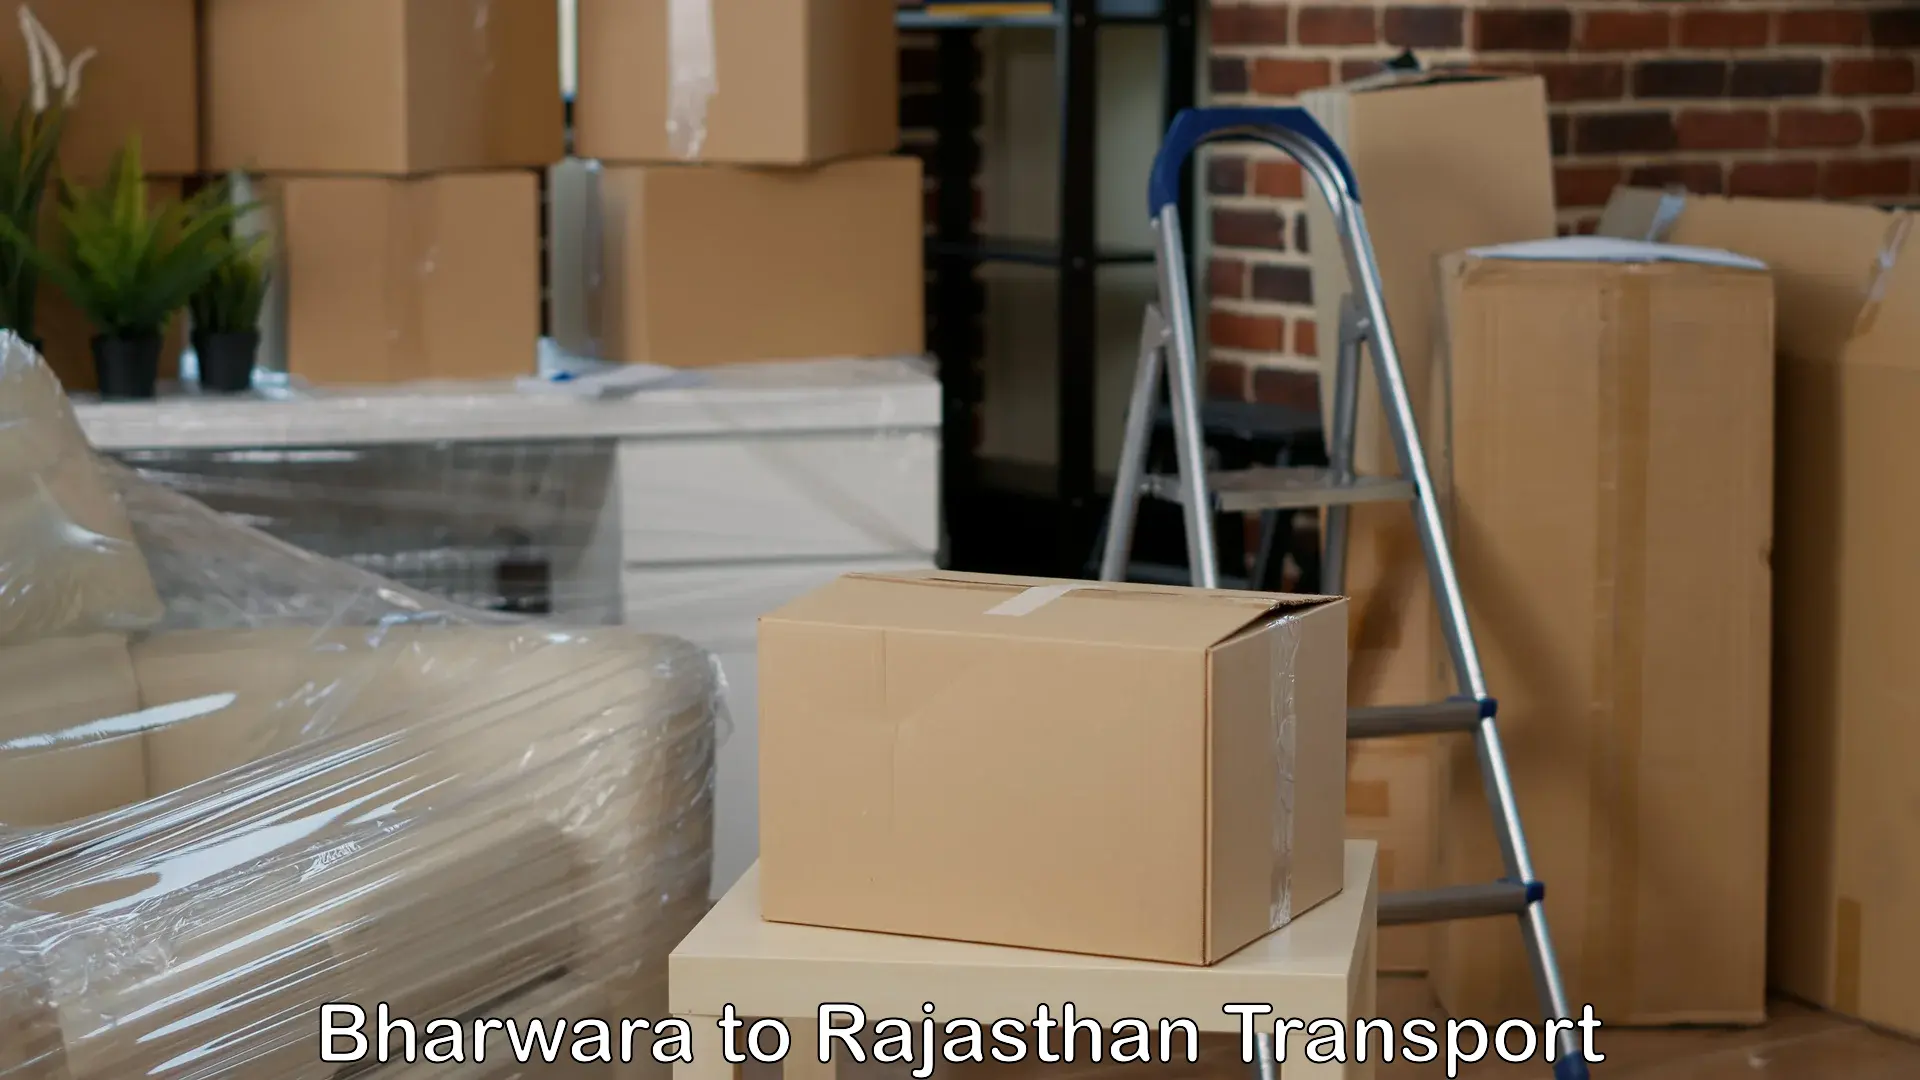 Furniture transport service Bharwara to Rajasthan